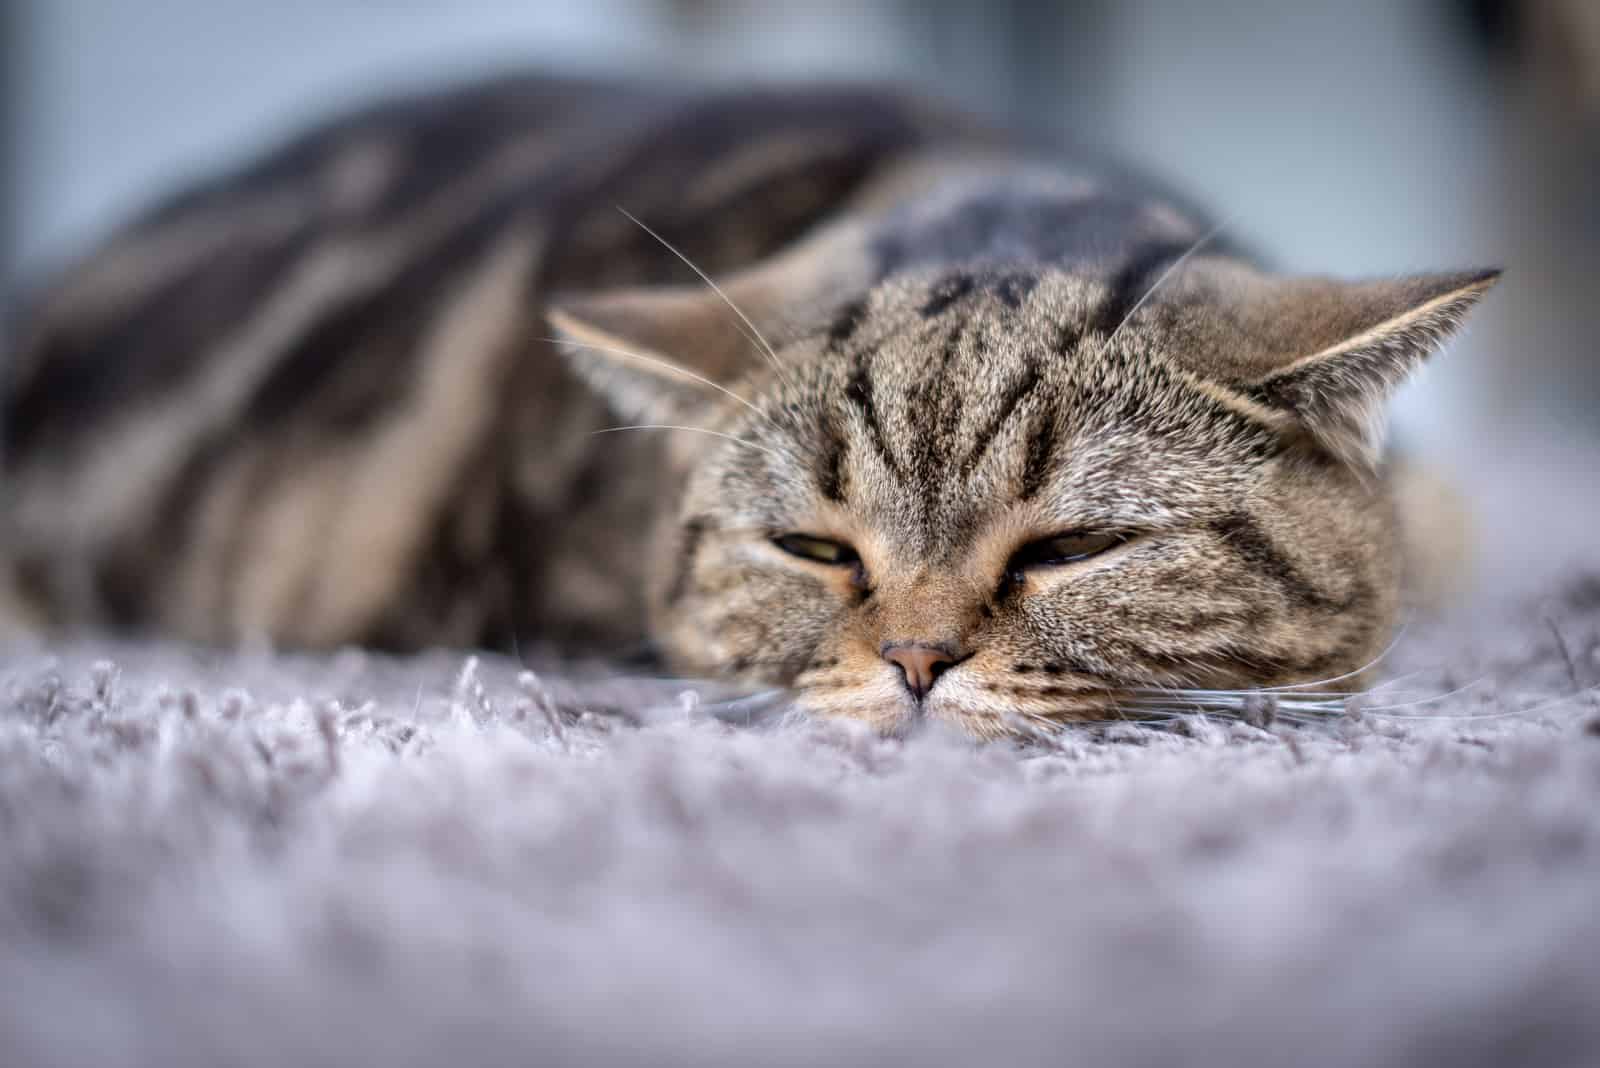 cat sleeping on carpet